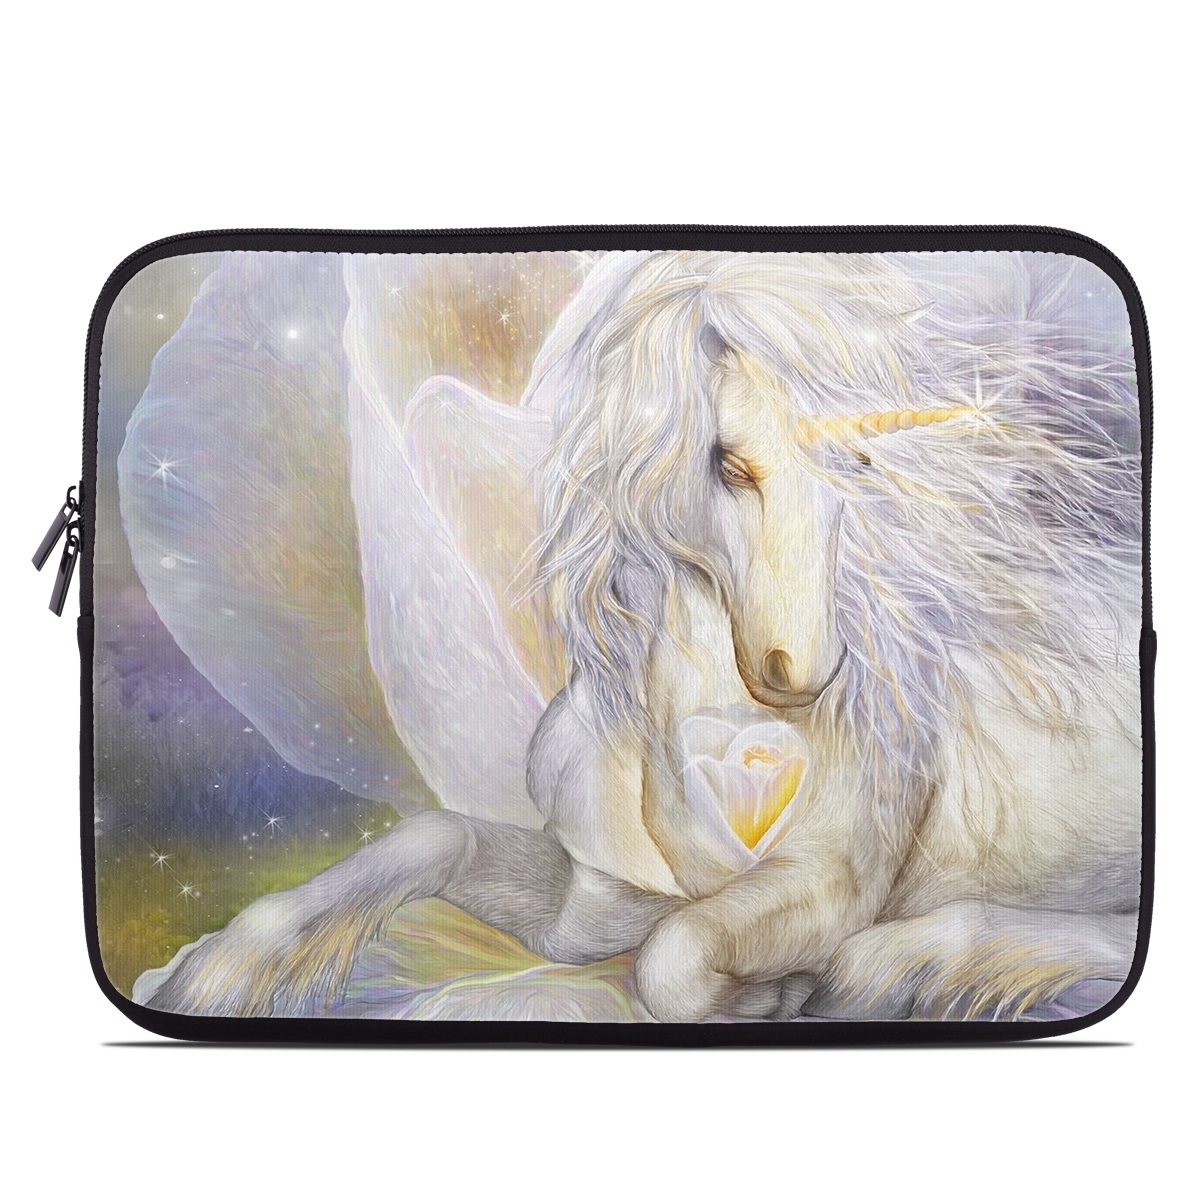 Laptop Sleeve - Heart Of Unicorn (Image 1)